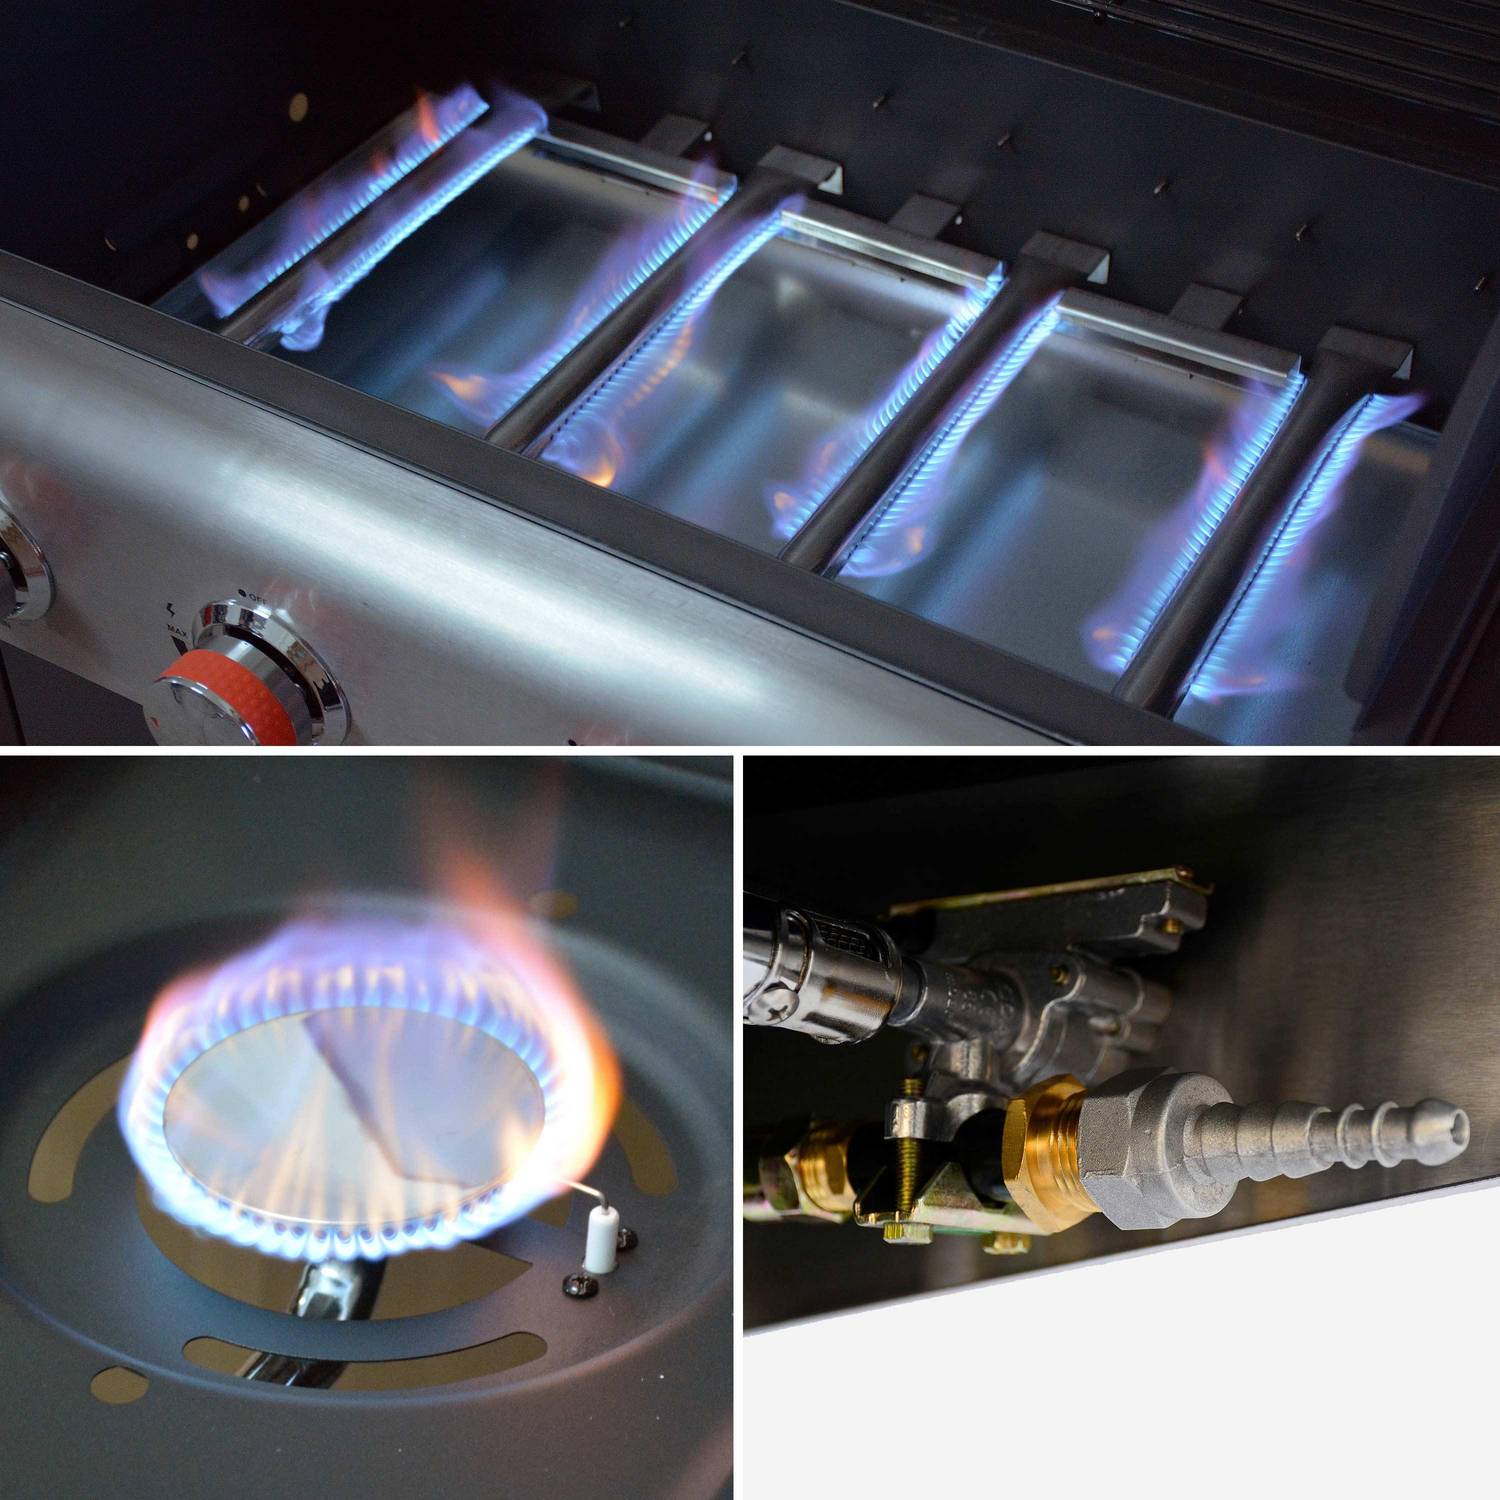 Churrasqueira a gás - Cozedor exterior 4 queimadores + 1 queimador lateral com placas e termómetro, armazenamento, rodas - Conector de gás G1/2 incluído - BAZIN Photo6